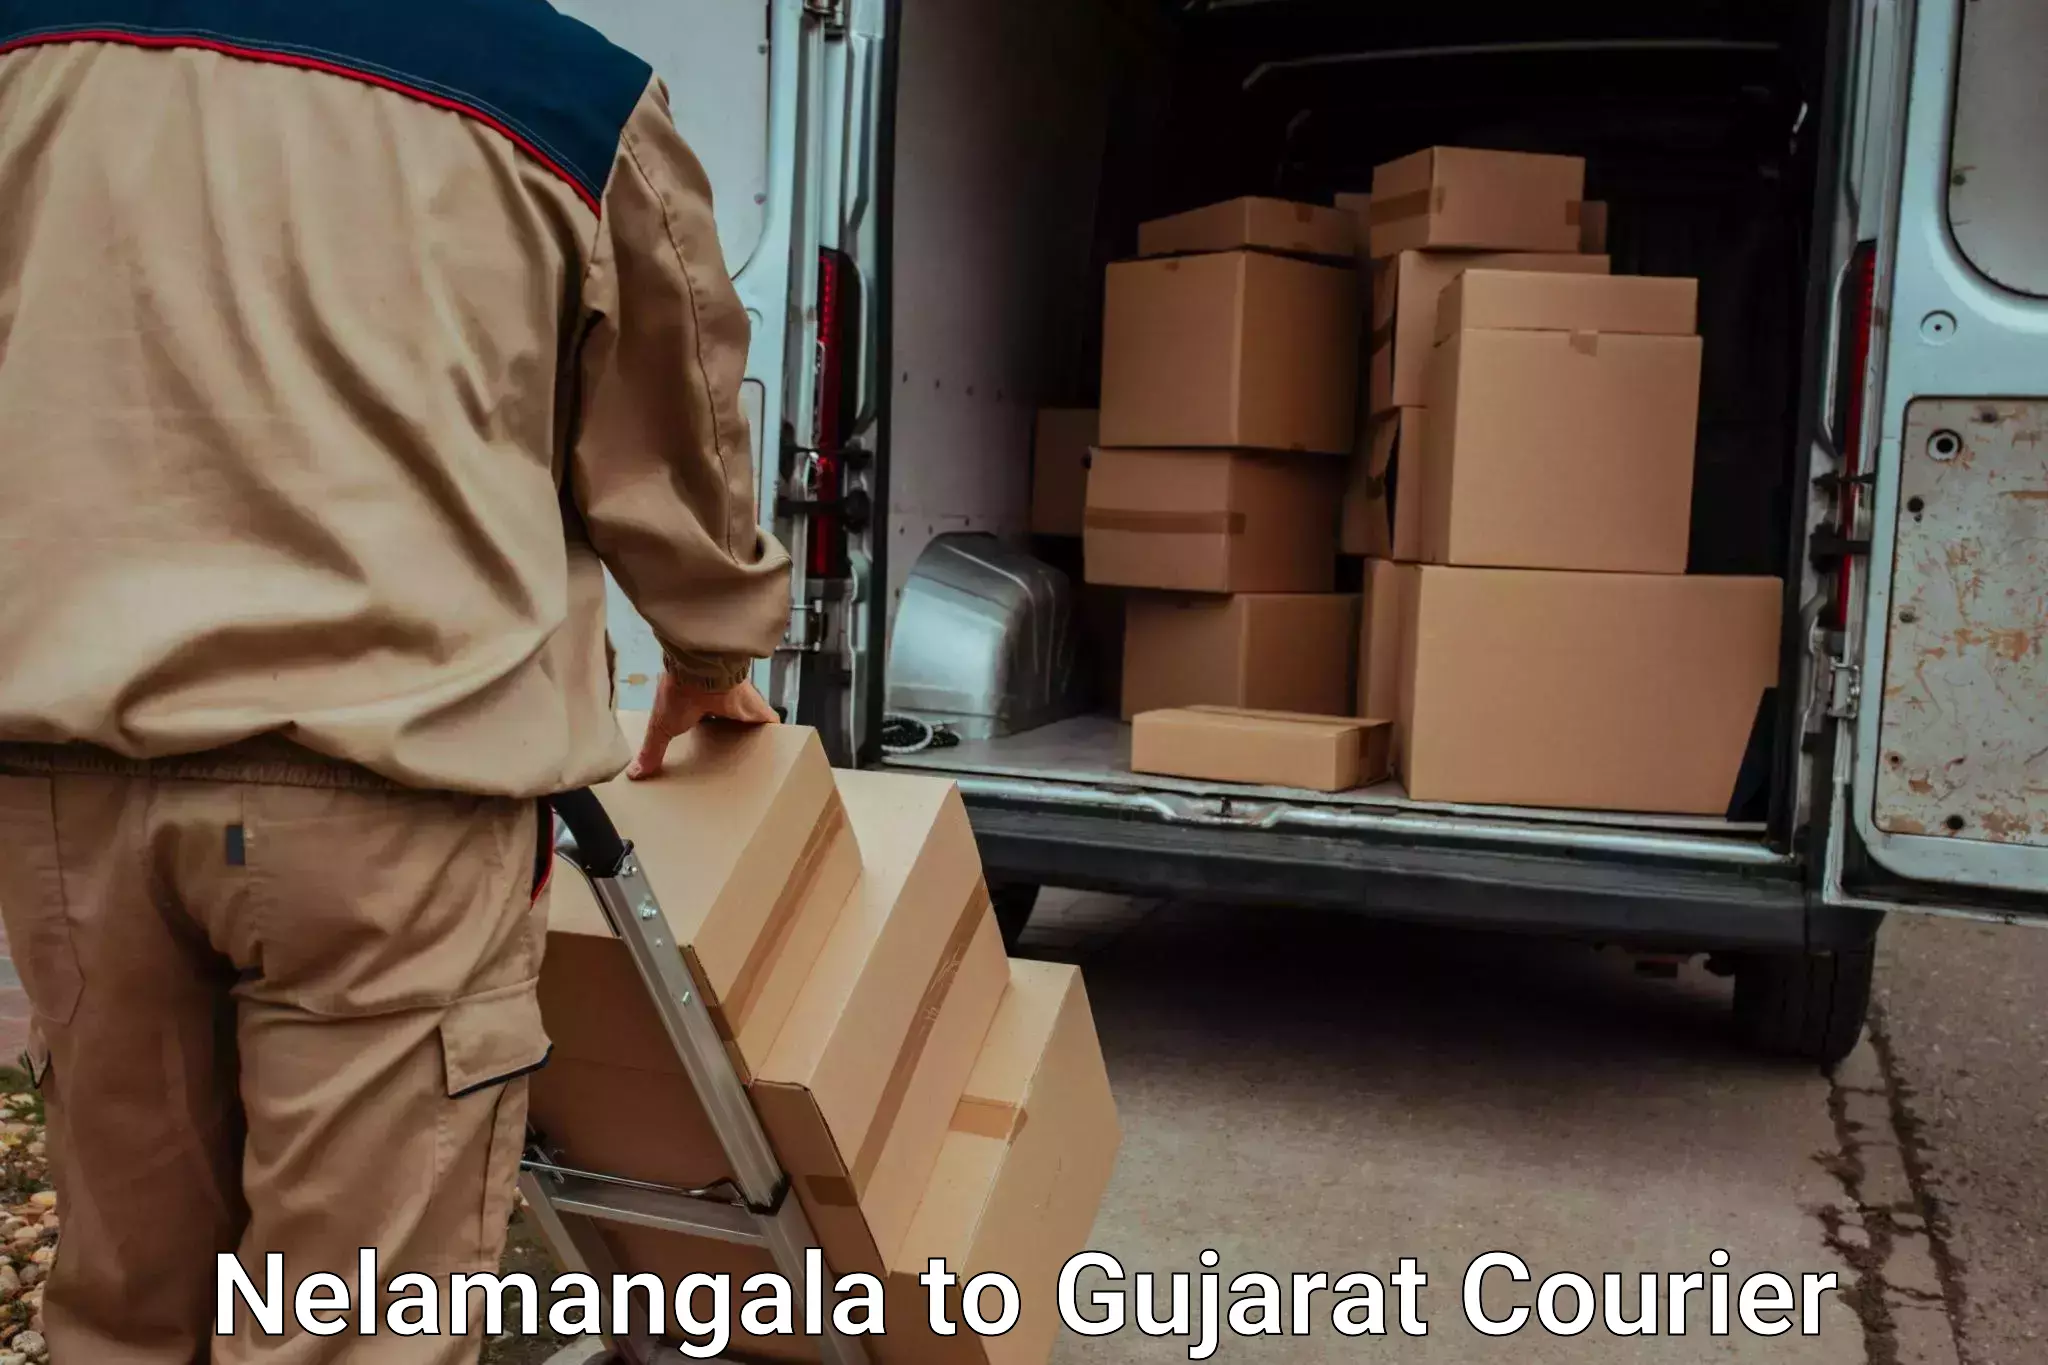 Luggage shipment specialists Nelamangala to Bardoli